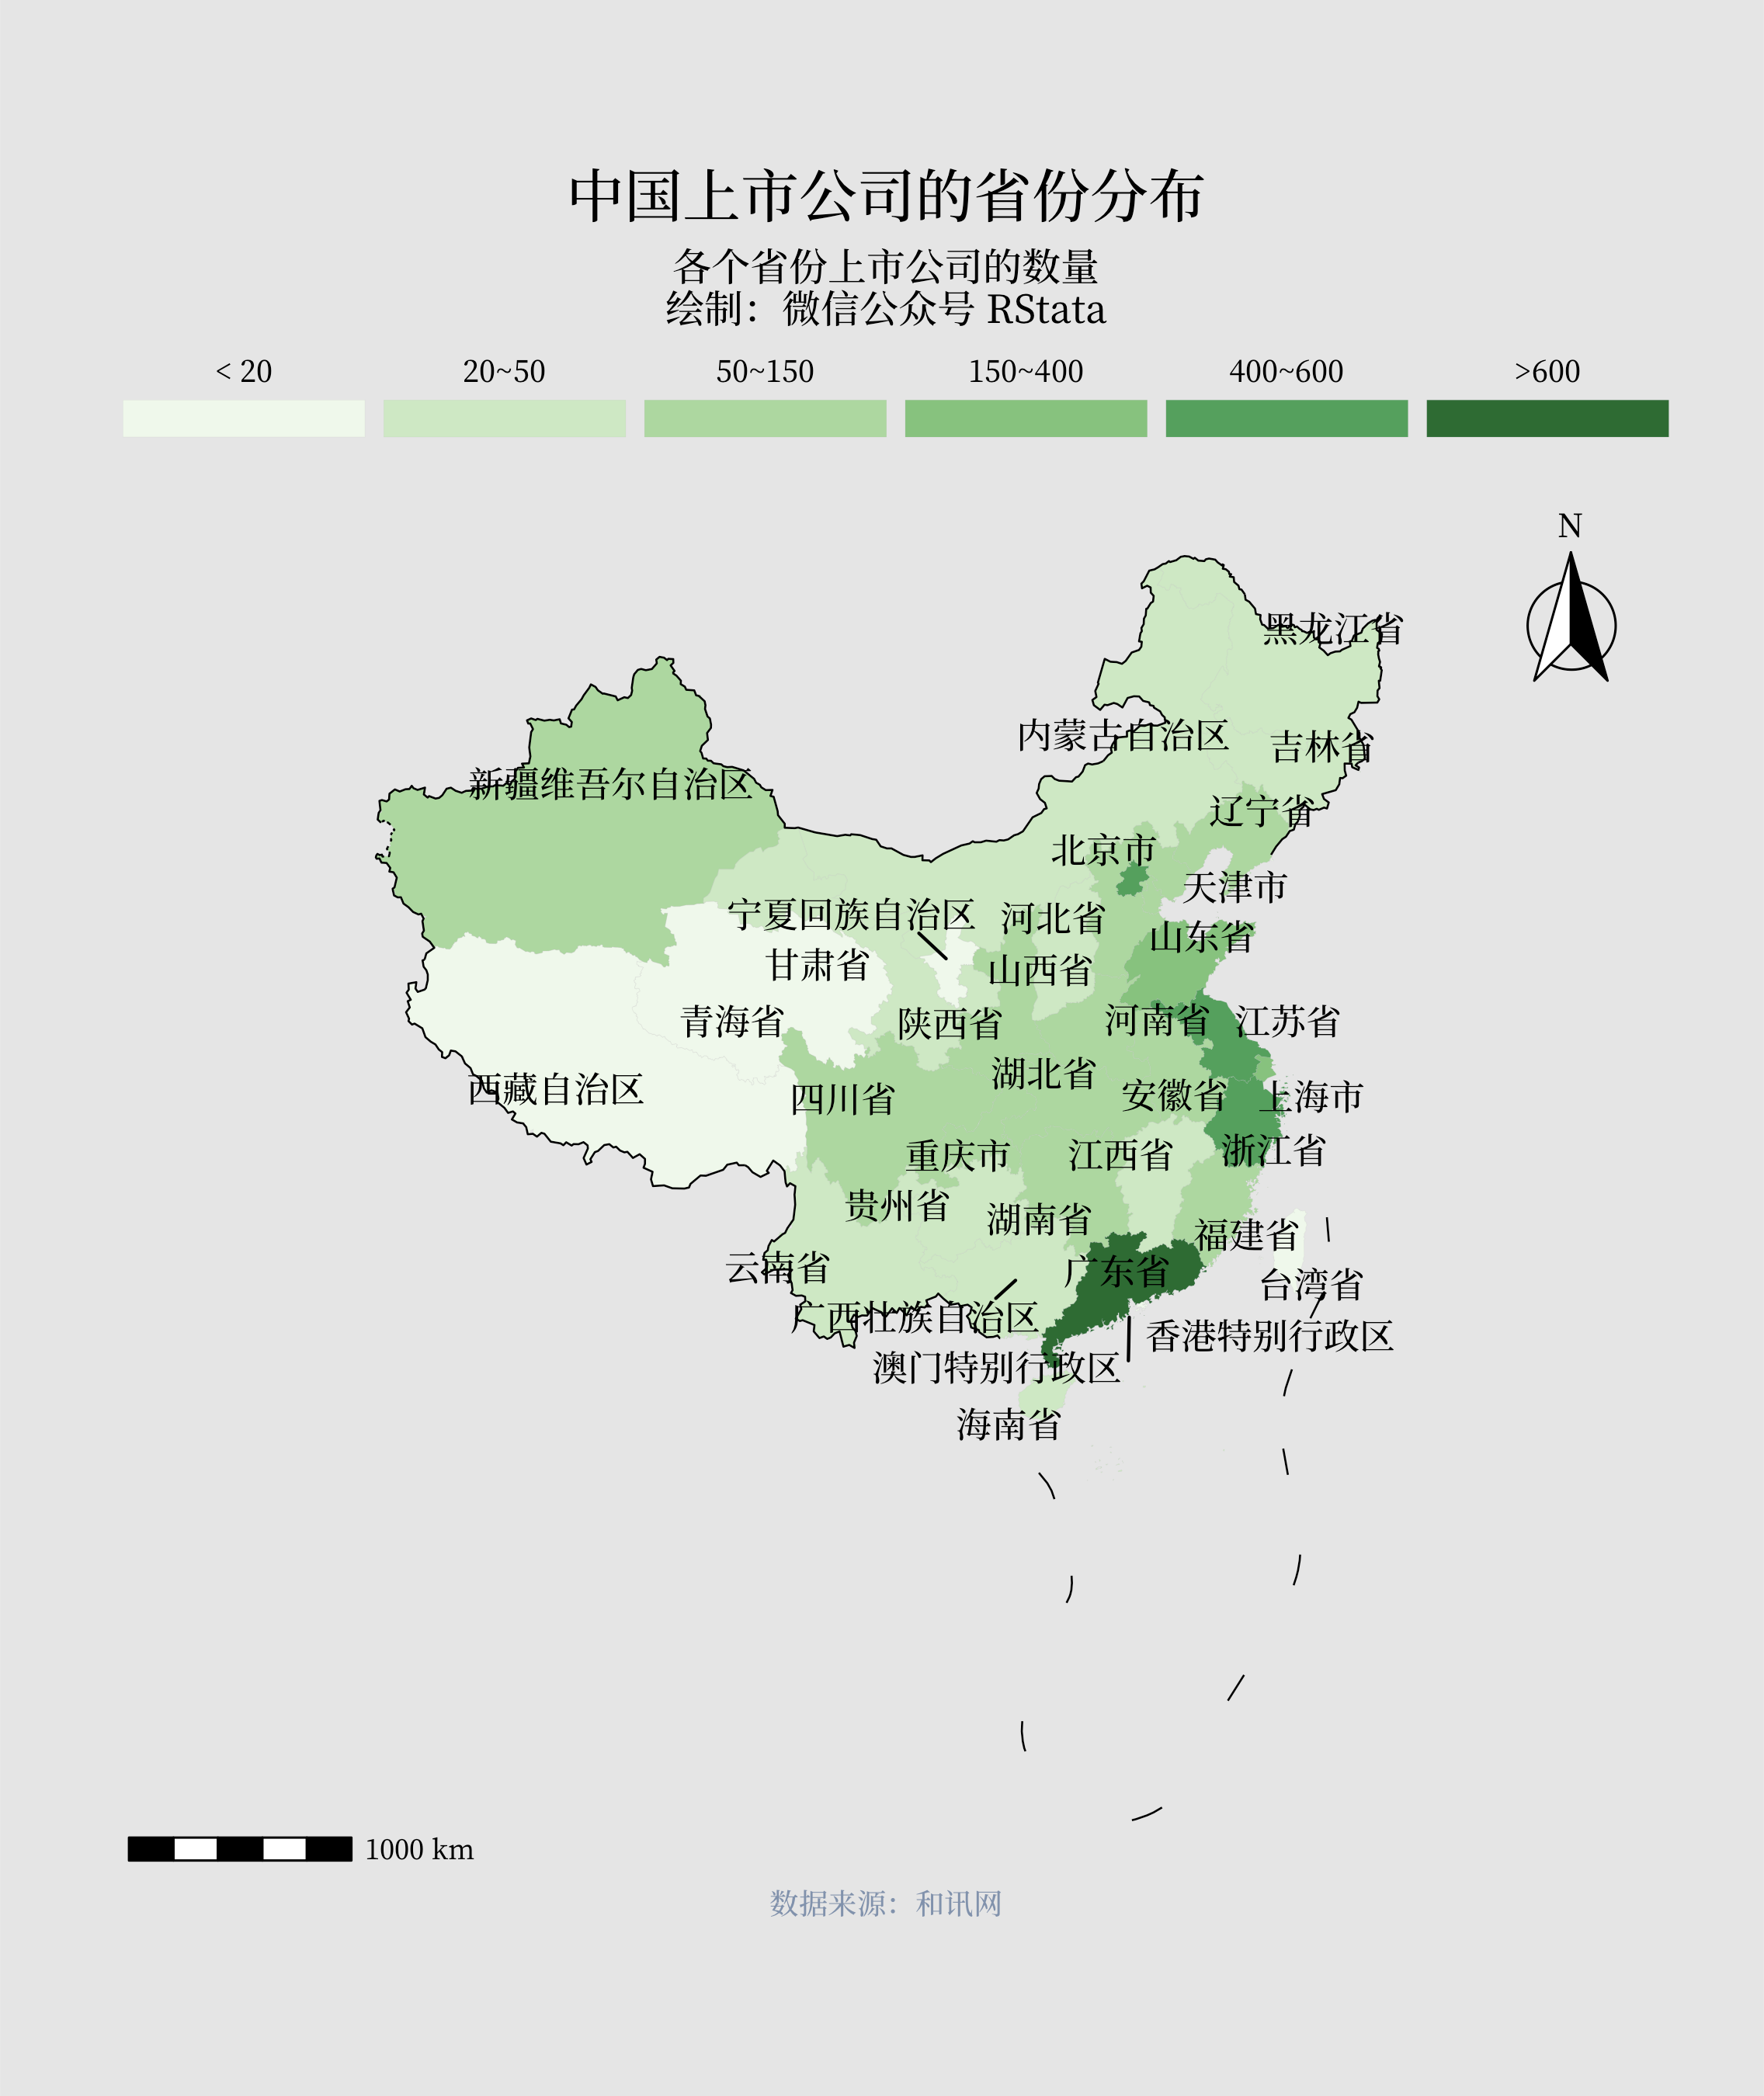 中国上市公司的省份分布